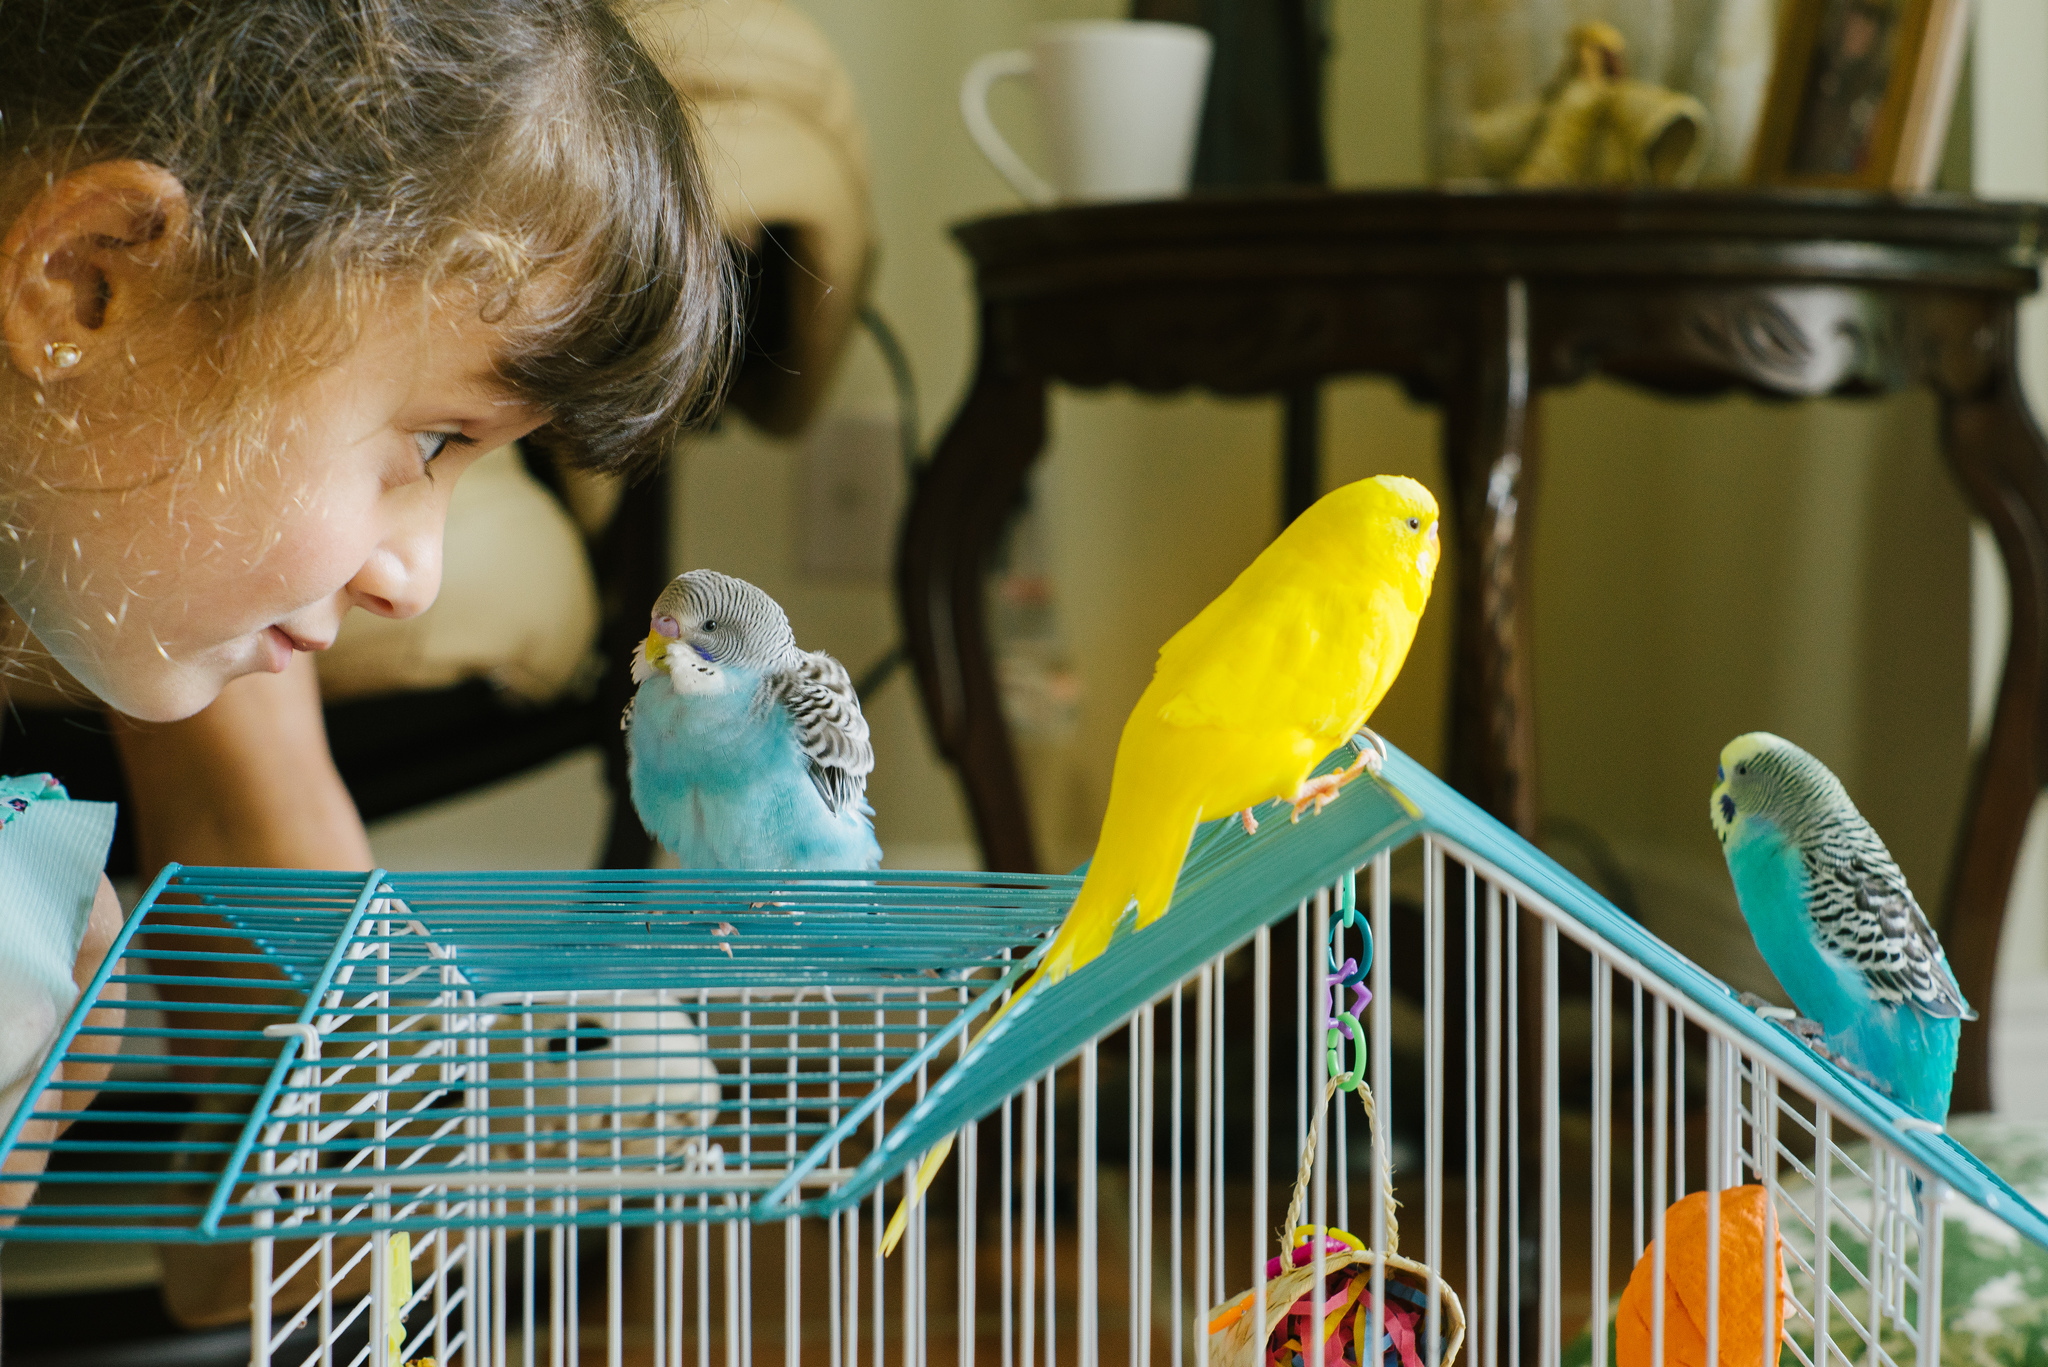 Маленькие домашние птички: фото и названия. какую птичку лучше завести в квартире